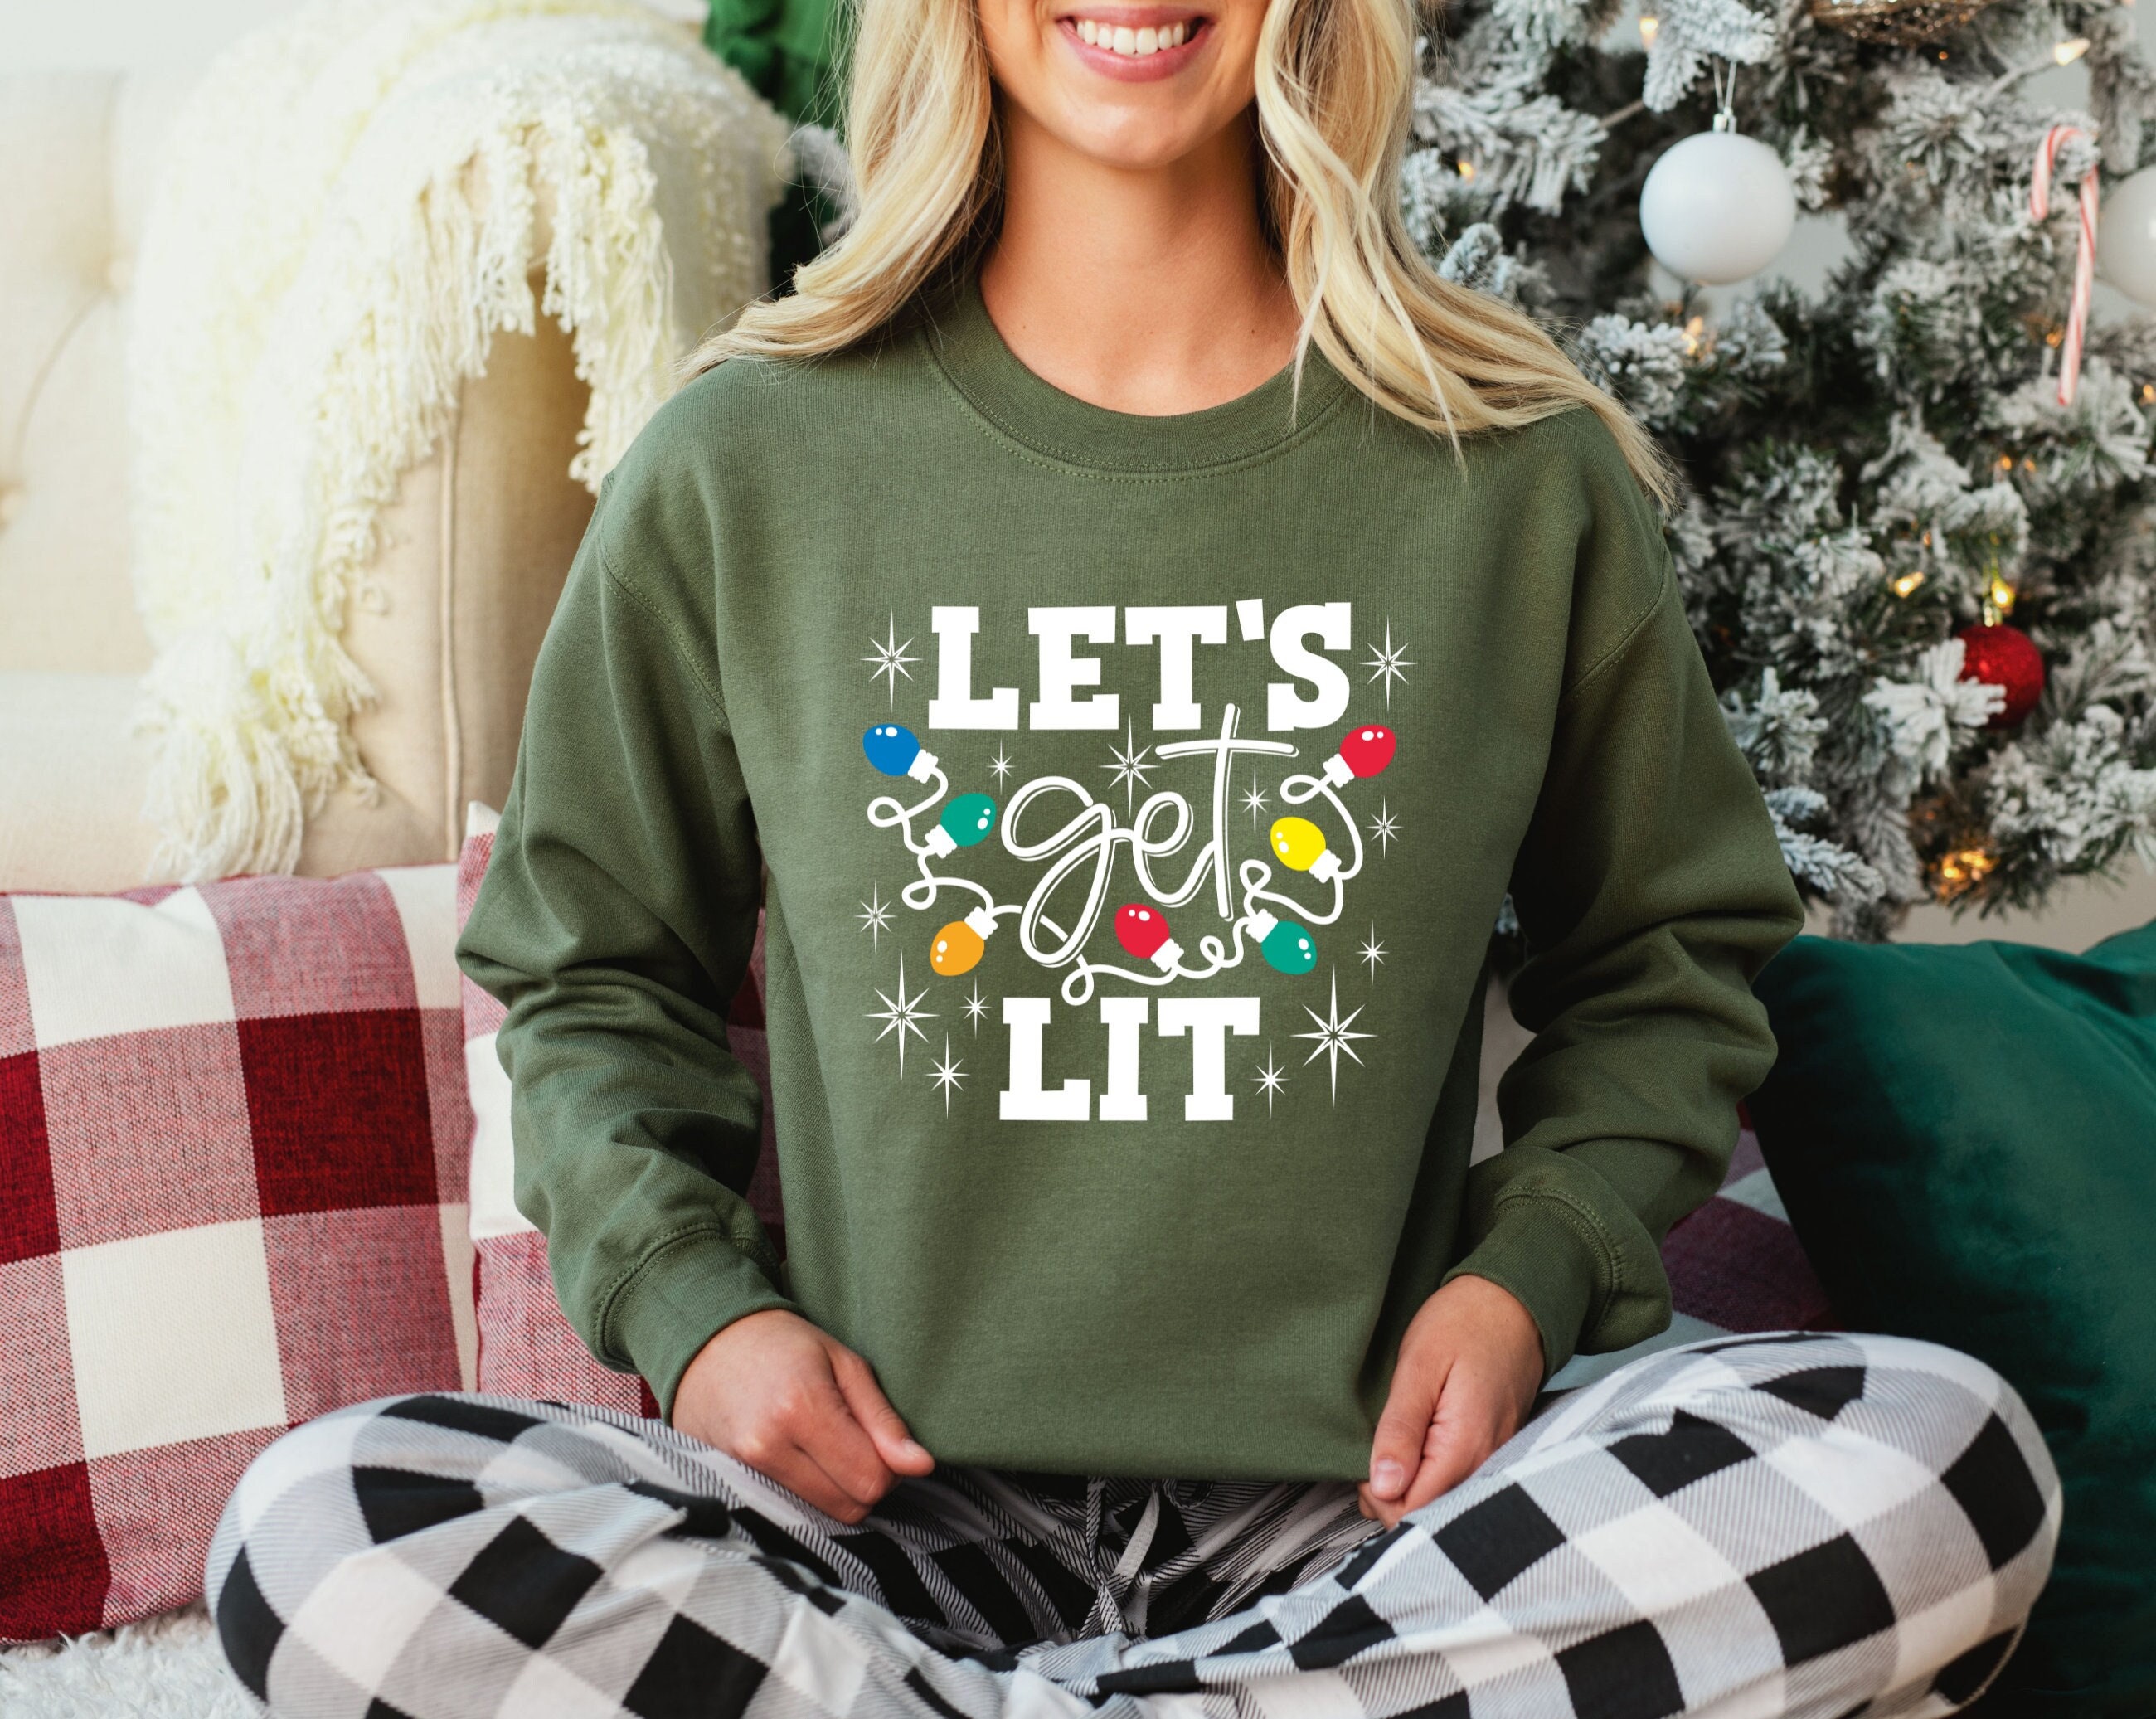 Santa Louis Litt let's get litt up Christmas shirt, hoodie, sweater, long  sleeve and tank top